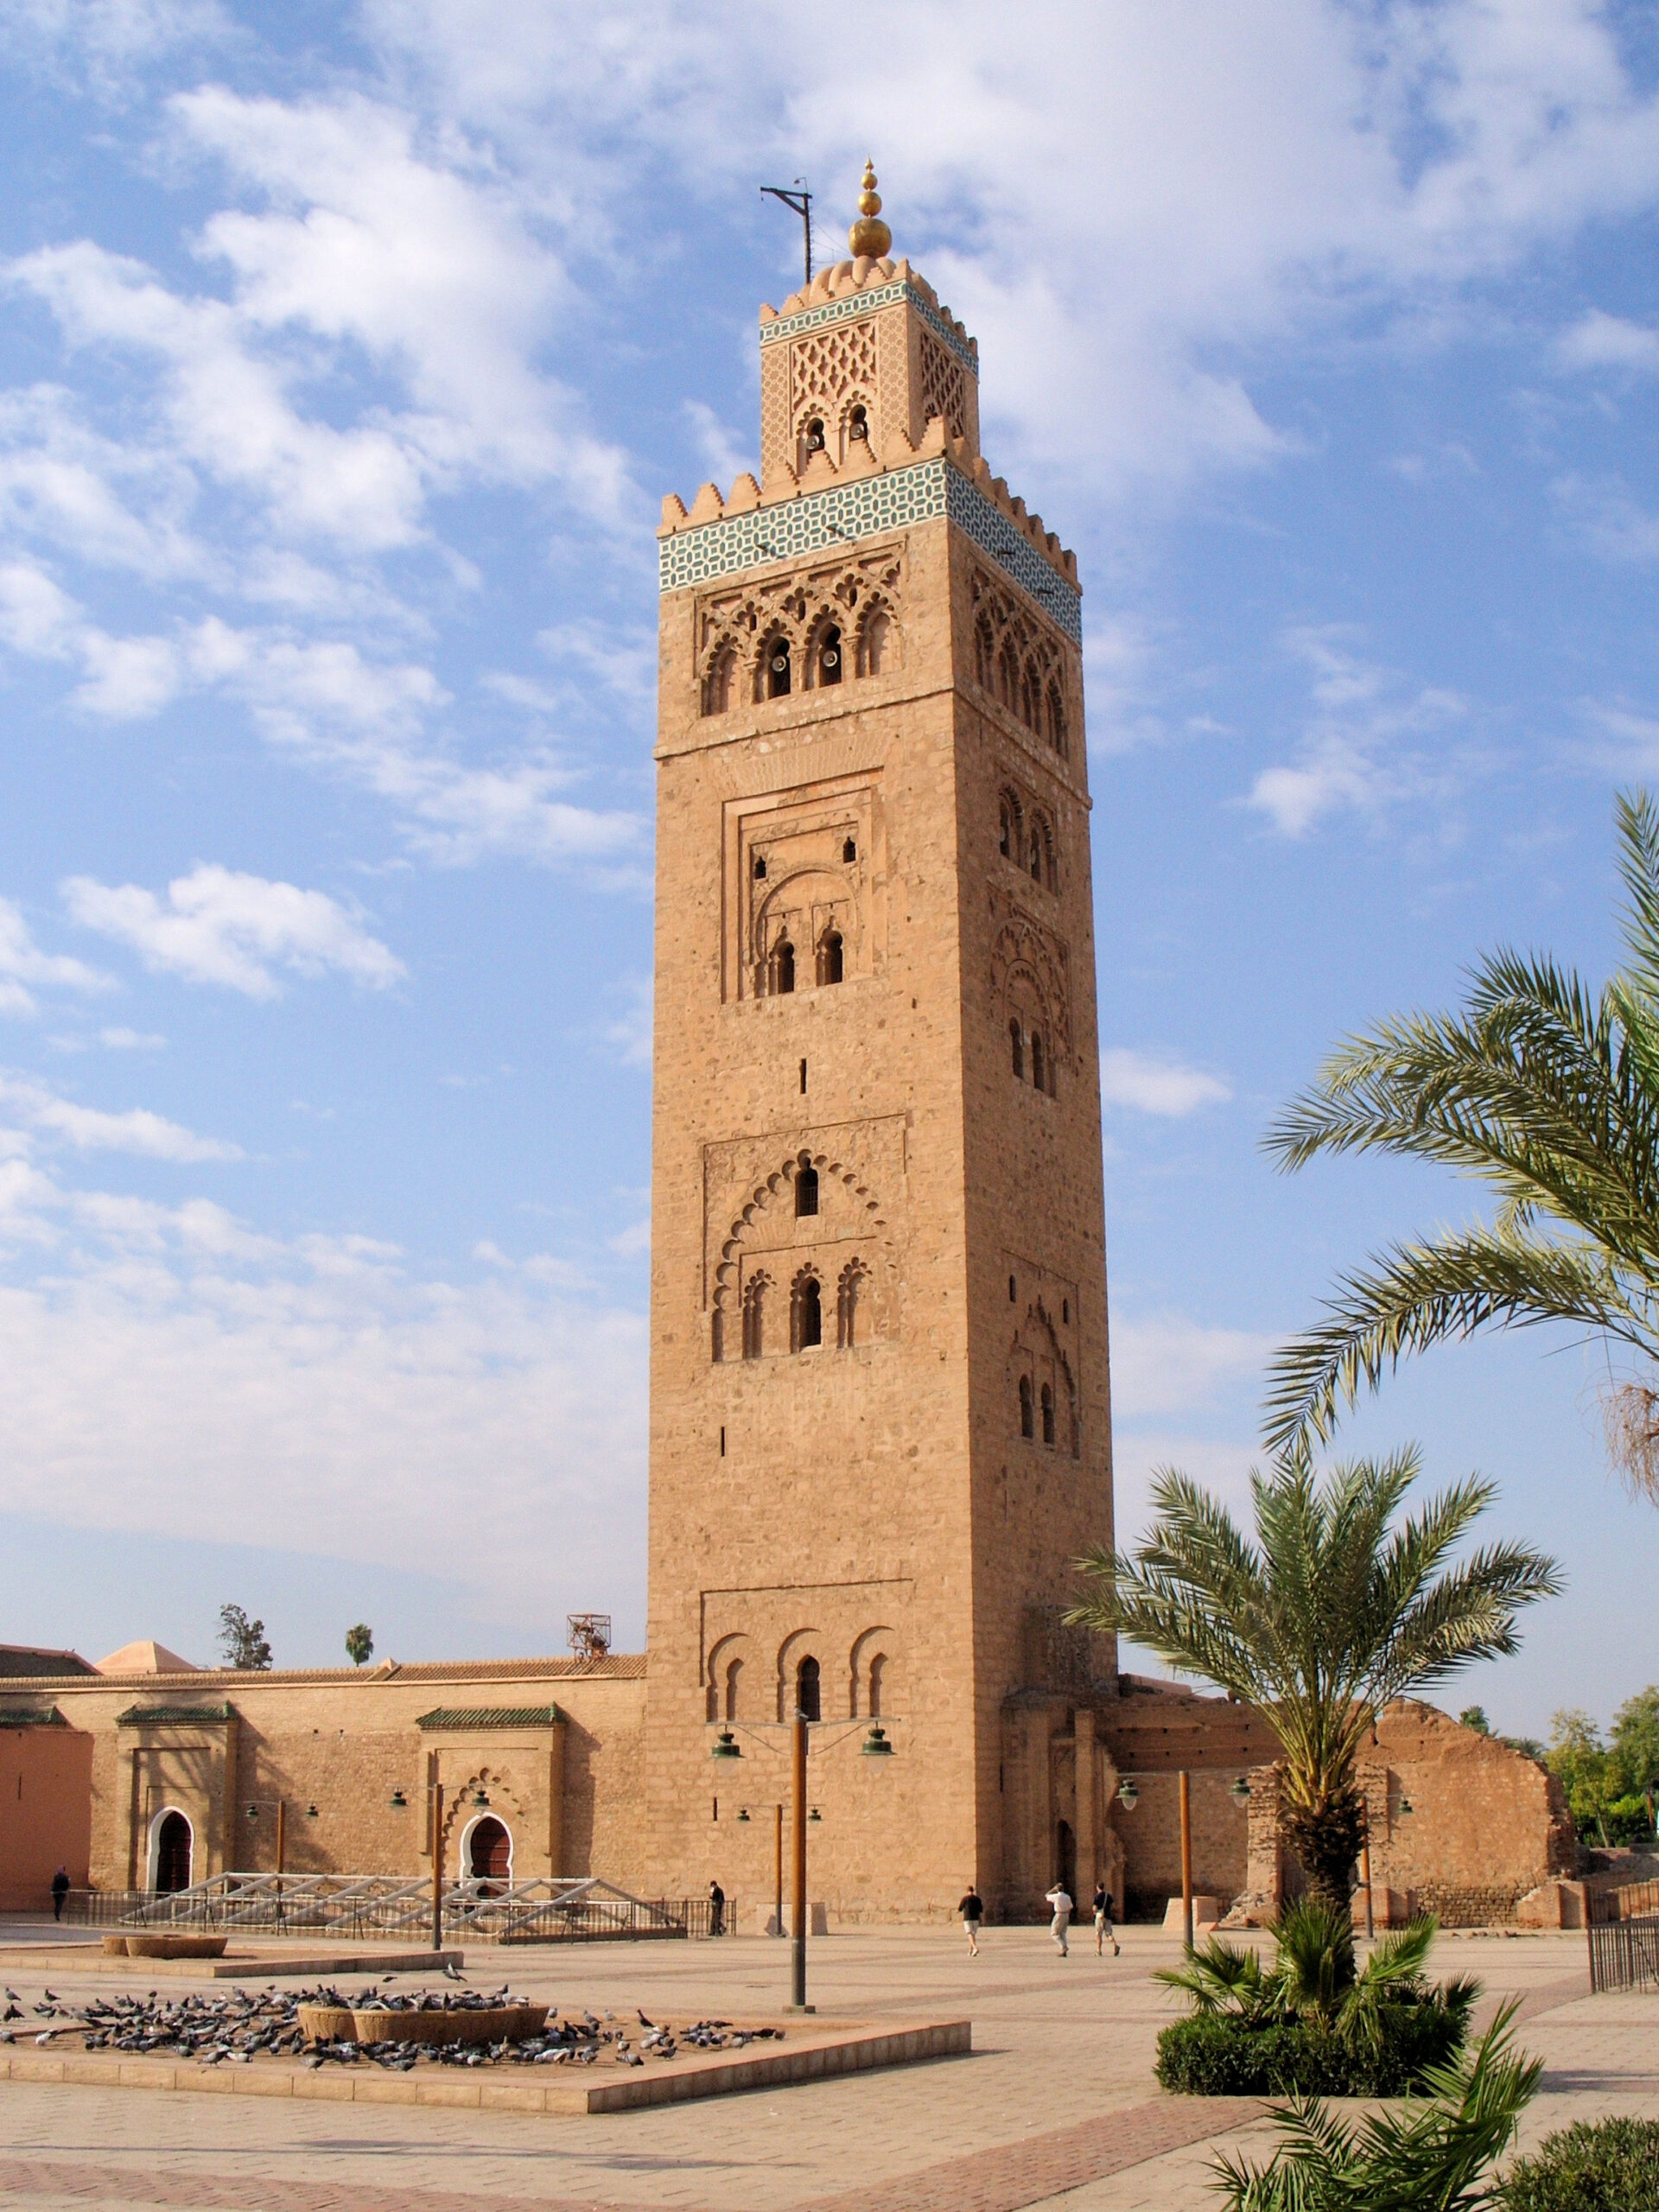 À Marrakech, le minaret de la Koutoubia avant le séisme. CC BY-SA 4.0